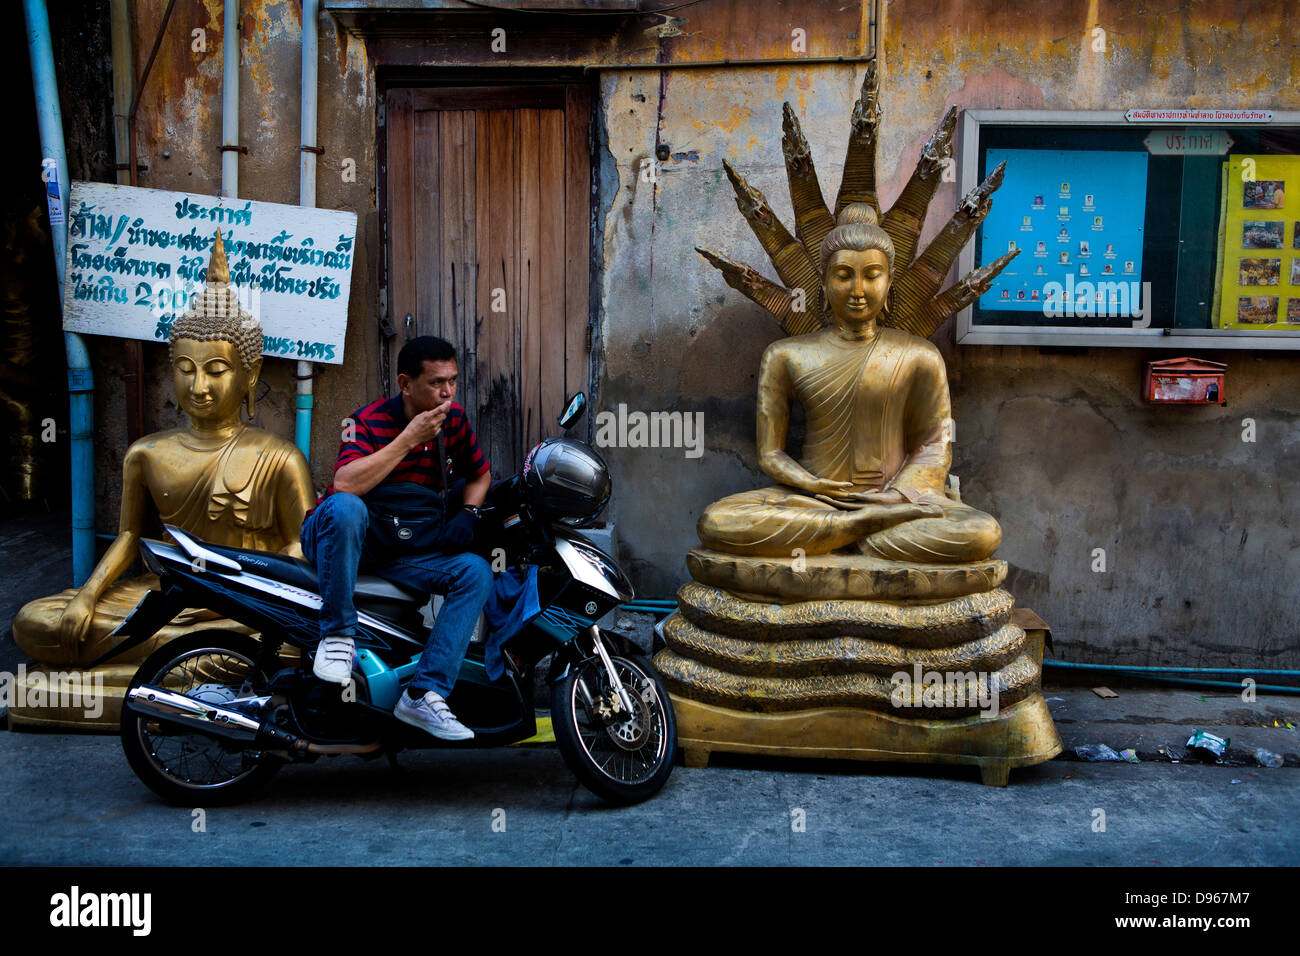 L'homme se reposant sur moto dans la région de Bangkok en icônes bouddhiste et hindoue Banque D'Images